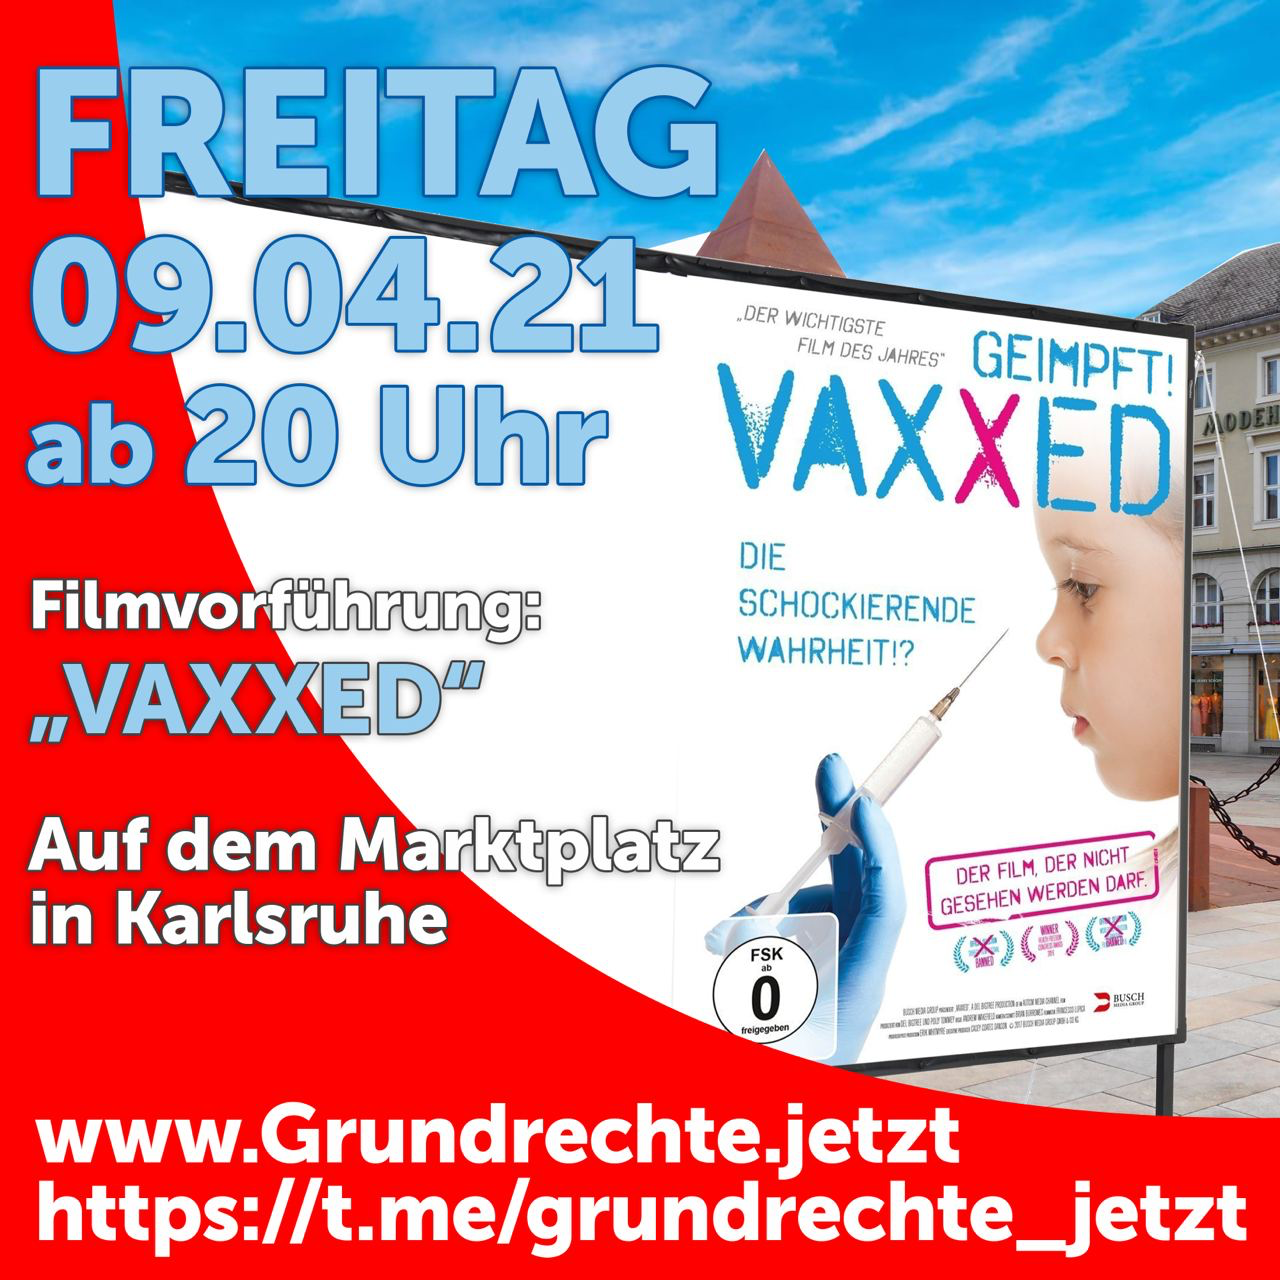 VAXXED - Filmvorführung - Karlsruhe Marktplatz 09.04.2021 20:00 Uhr